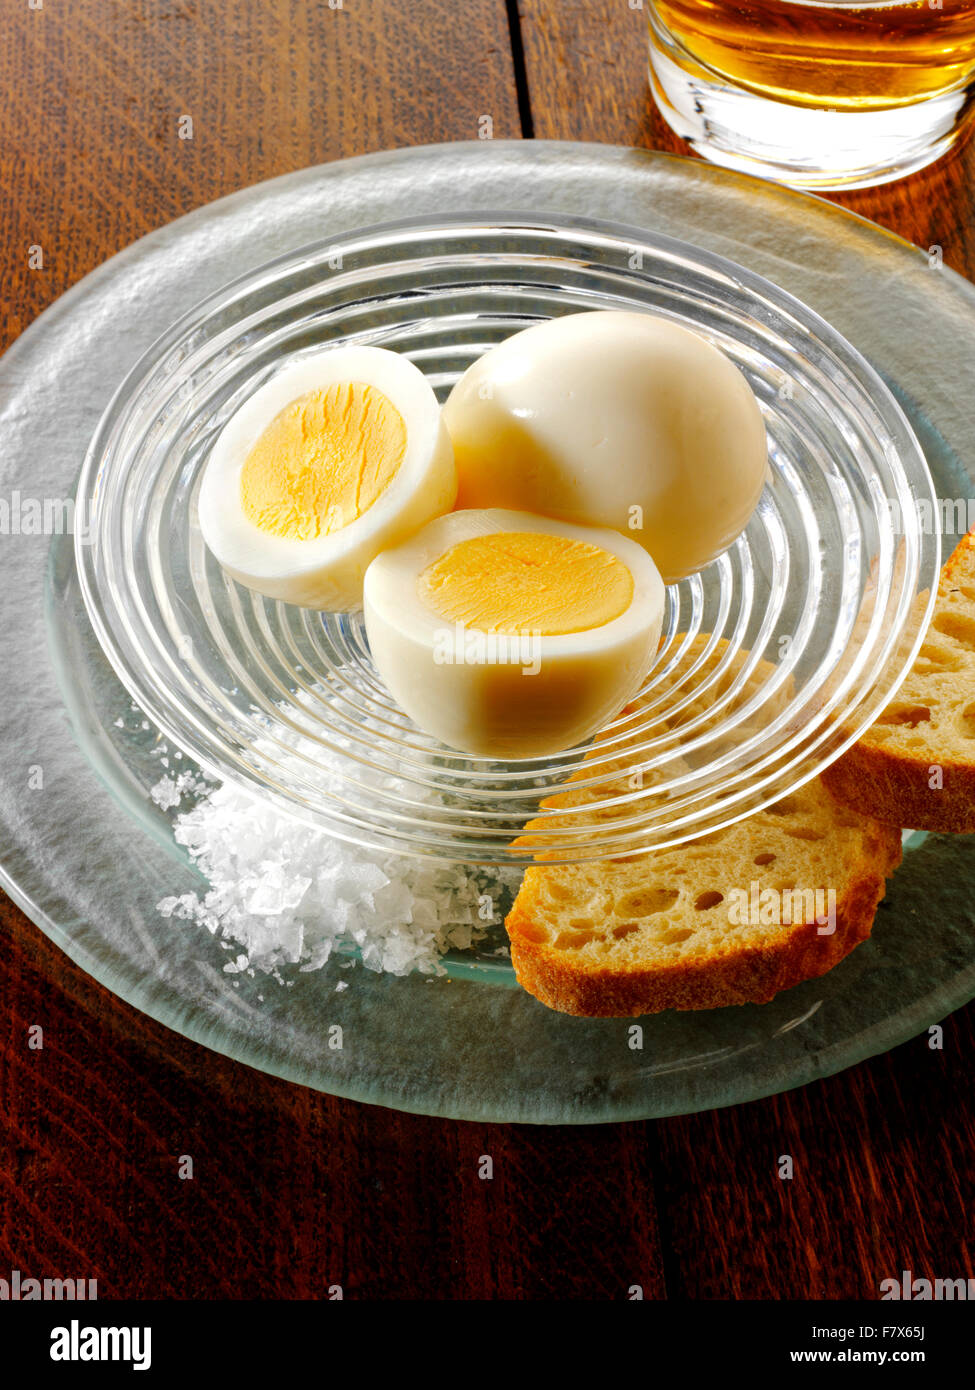 Eingelegte Eier, traditionelle britische Pub-Gerichte, serviert mit Salz und Brot Stockfoto